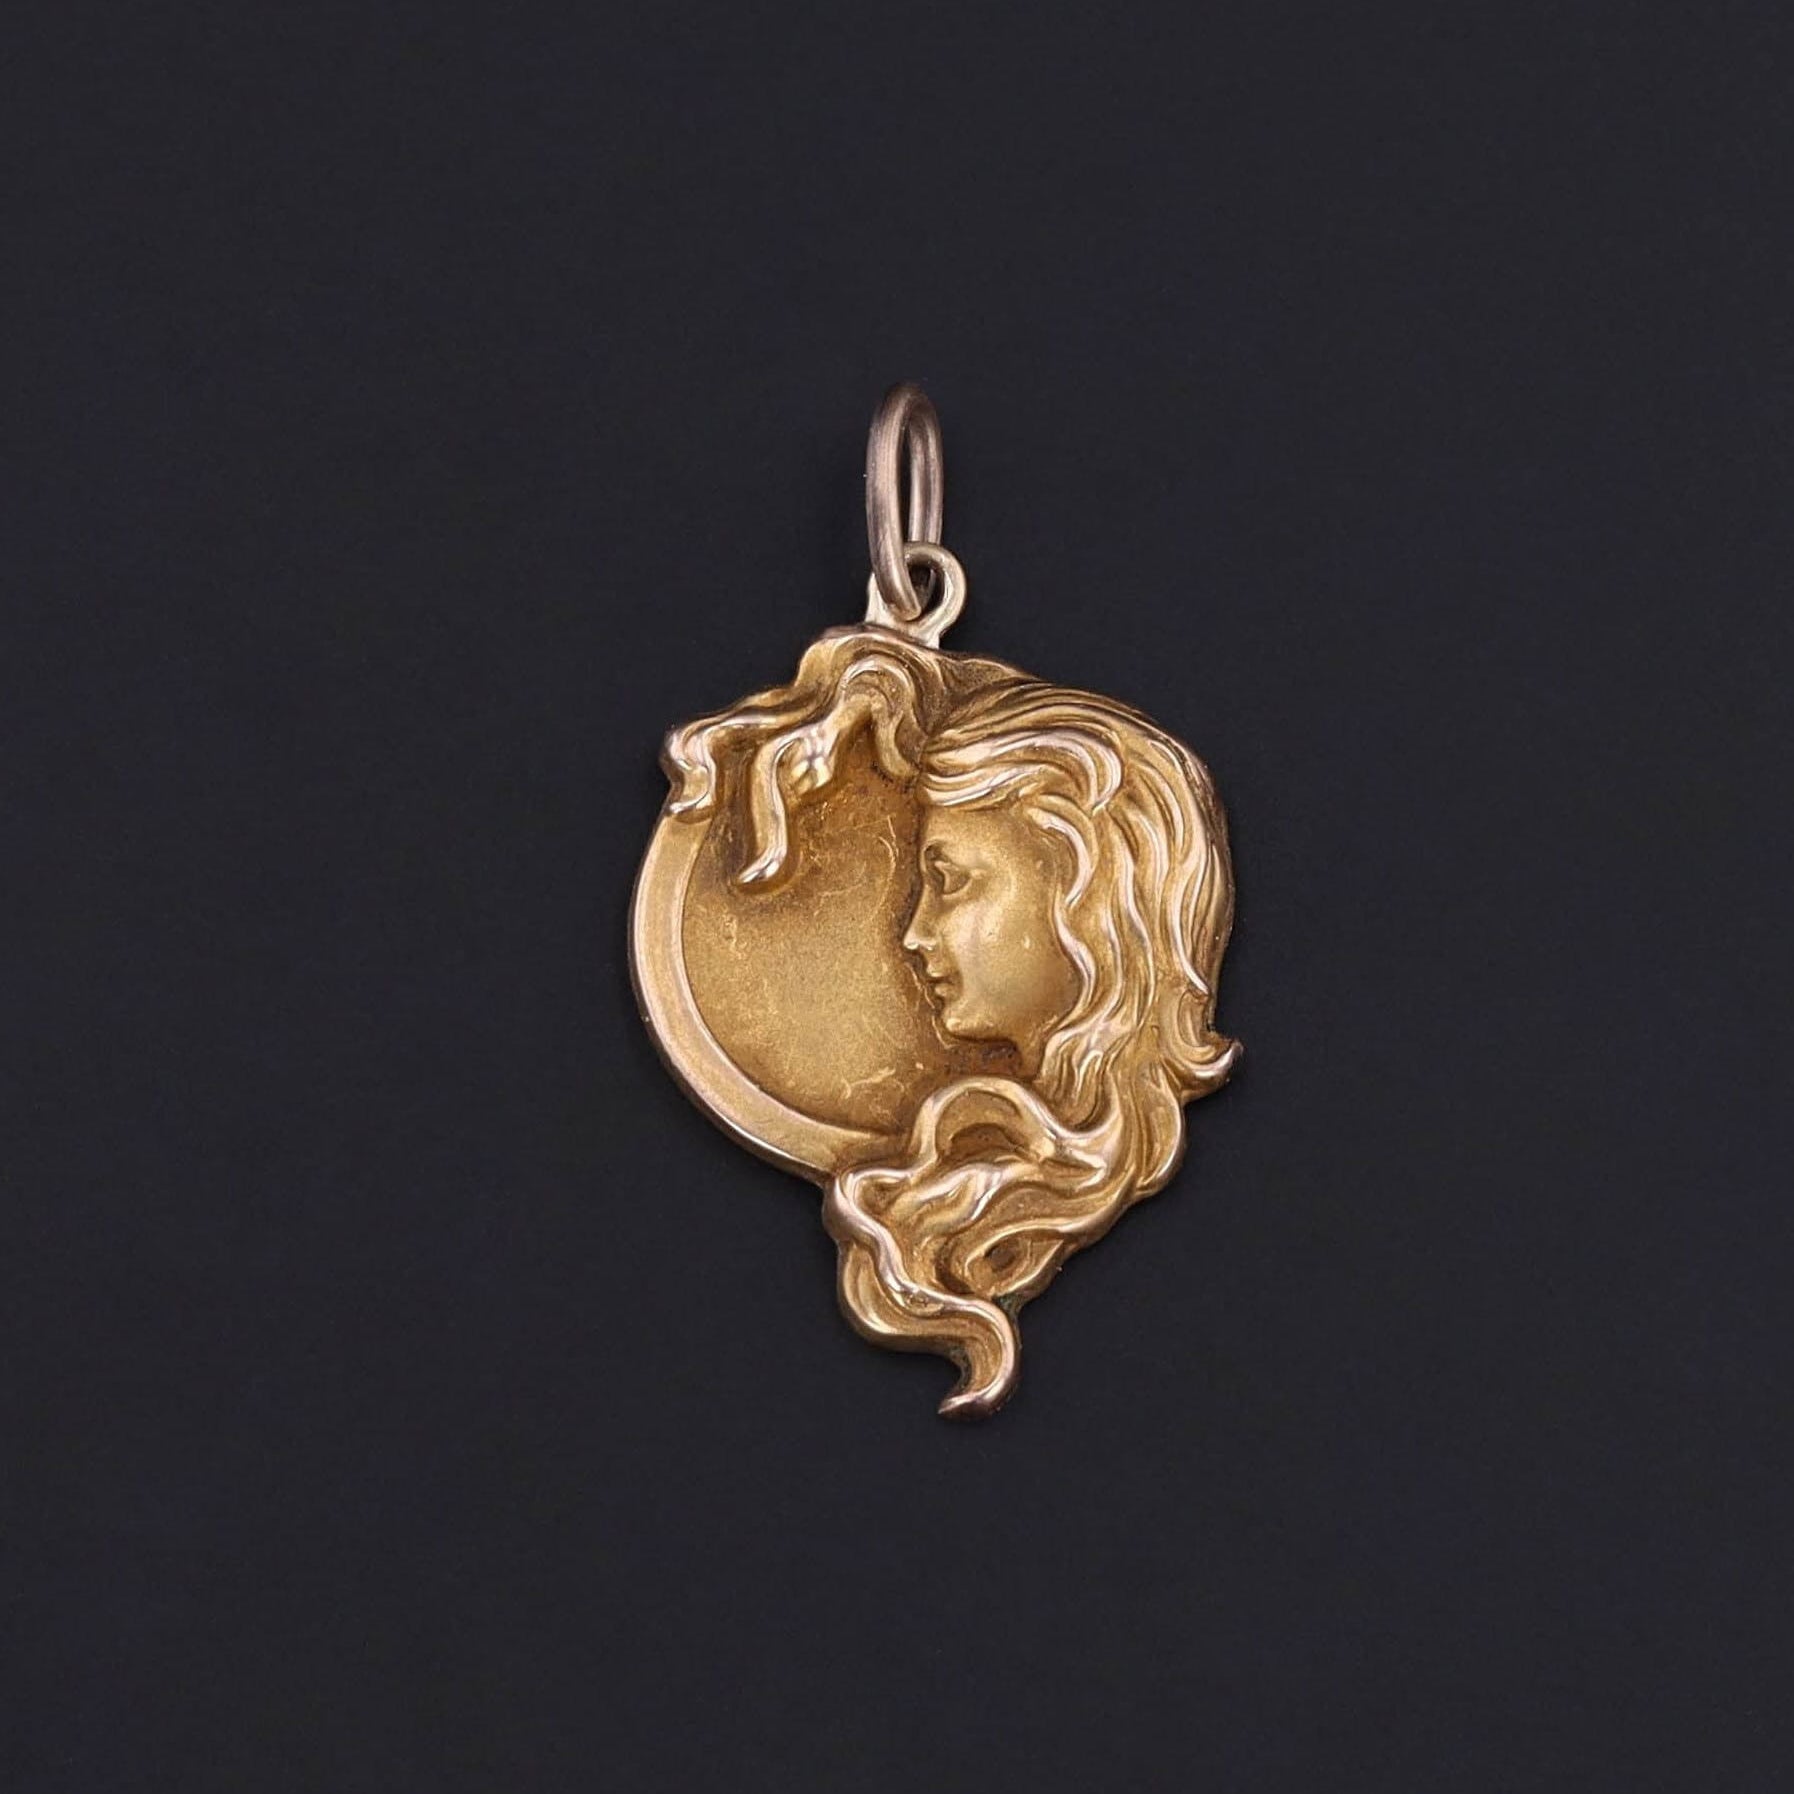 Antique Art Nouveau Woman in the Moon Pendant of 10k Gold